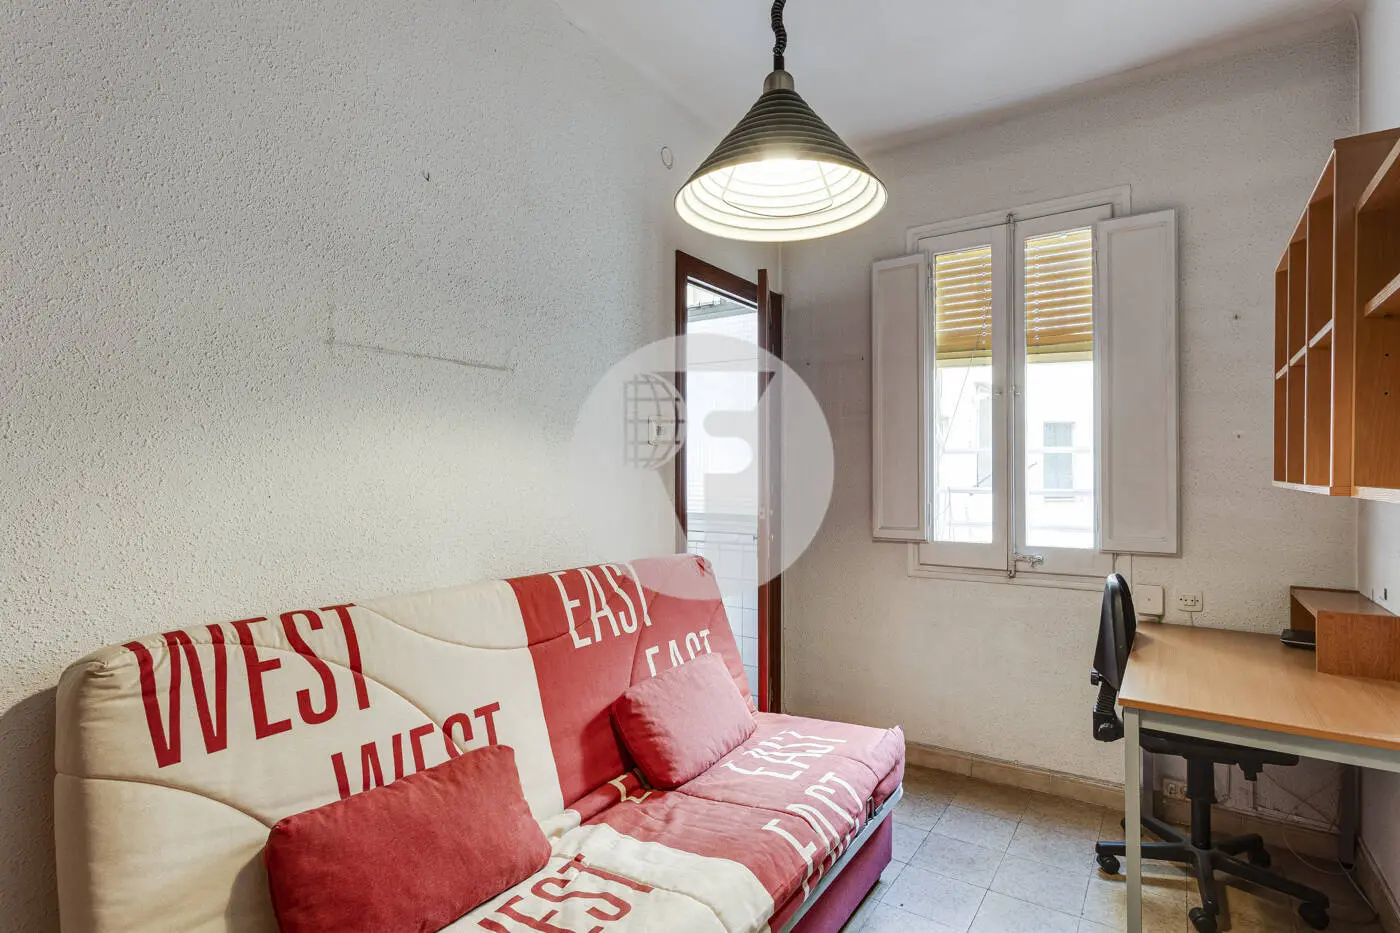 Piso de 3 habitaciones ubicado en el barrio de la Nova Esquerra de l'Eixample de Barcelona. 20